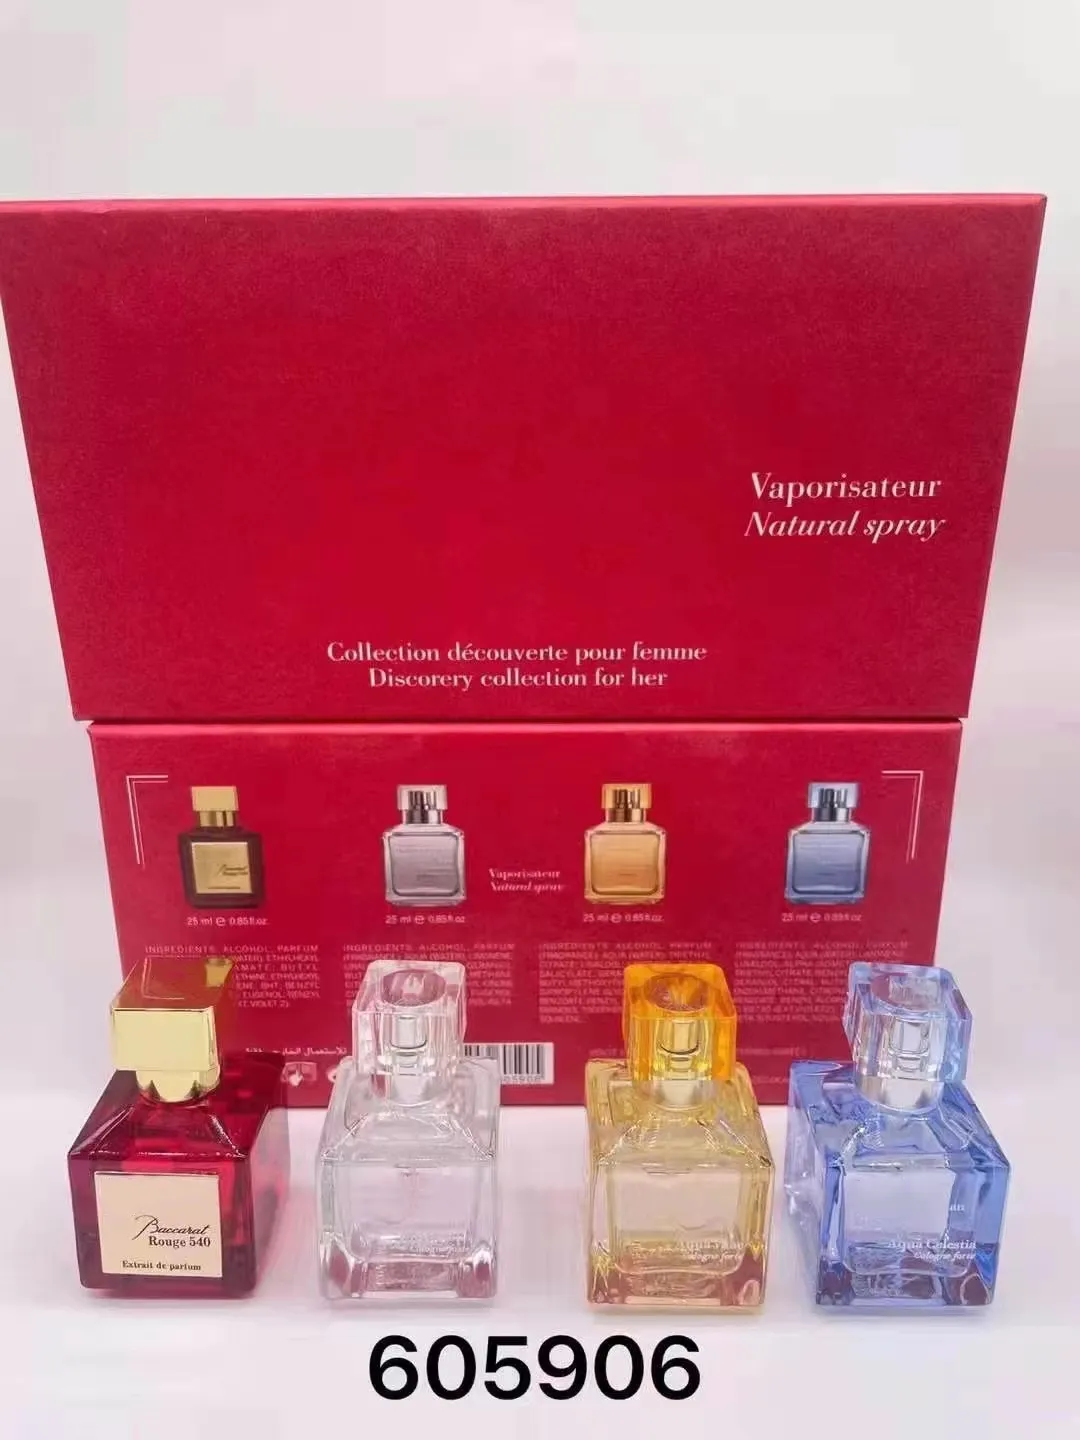 Premierlash Marke Paris Paris Parfüm Set 25ml 4pcs Rouge 540 Parfum Blumenduft Stimmung Extrait Extrait Langlebige Geruchsspray Geschenkbox 4 in 1 hohe Qualität